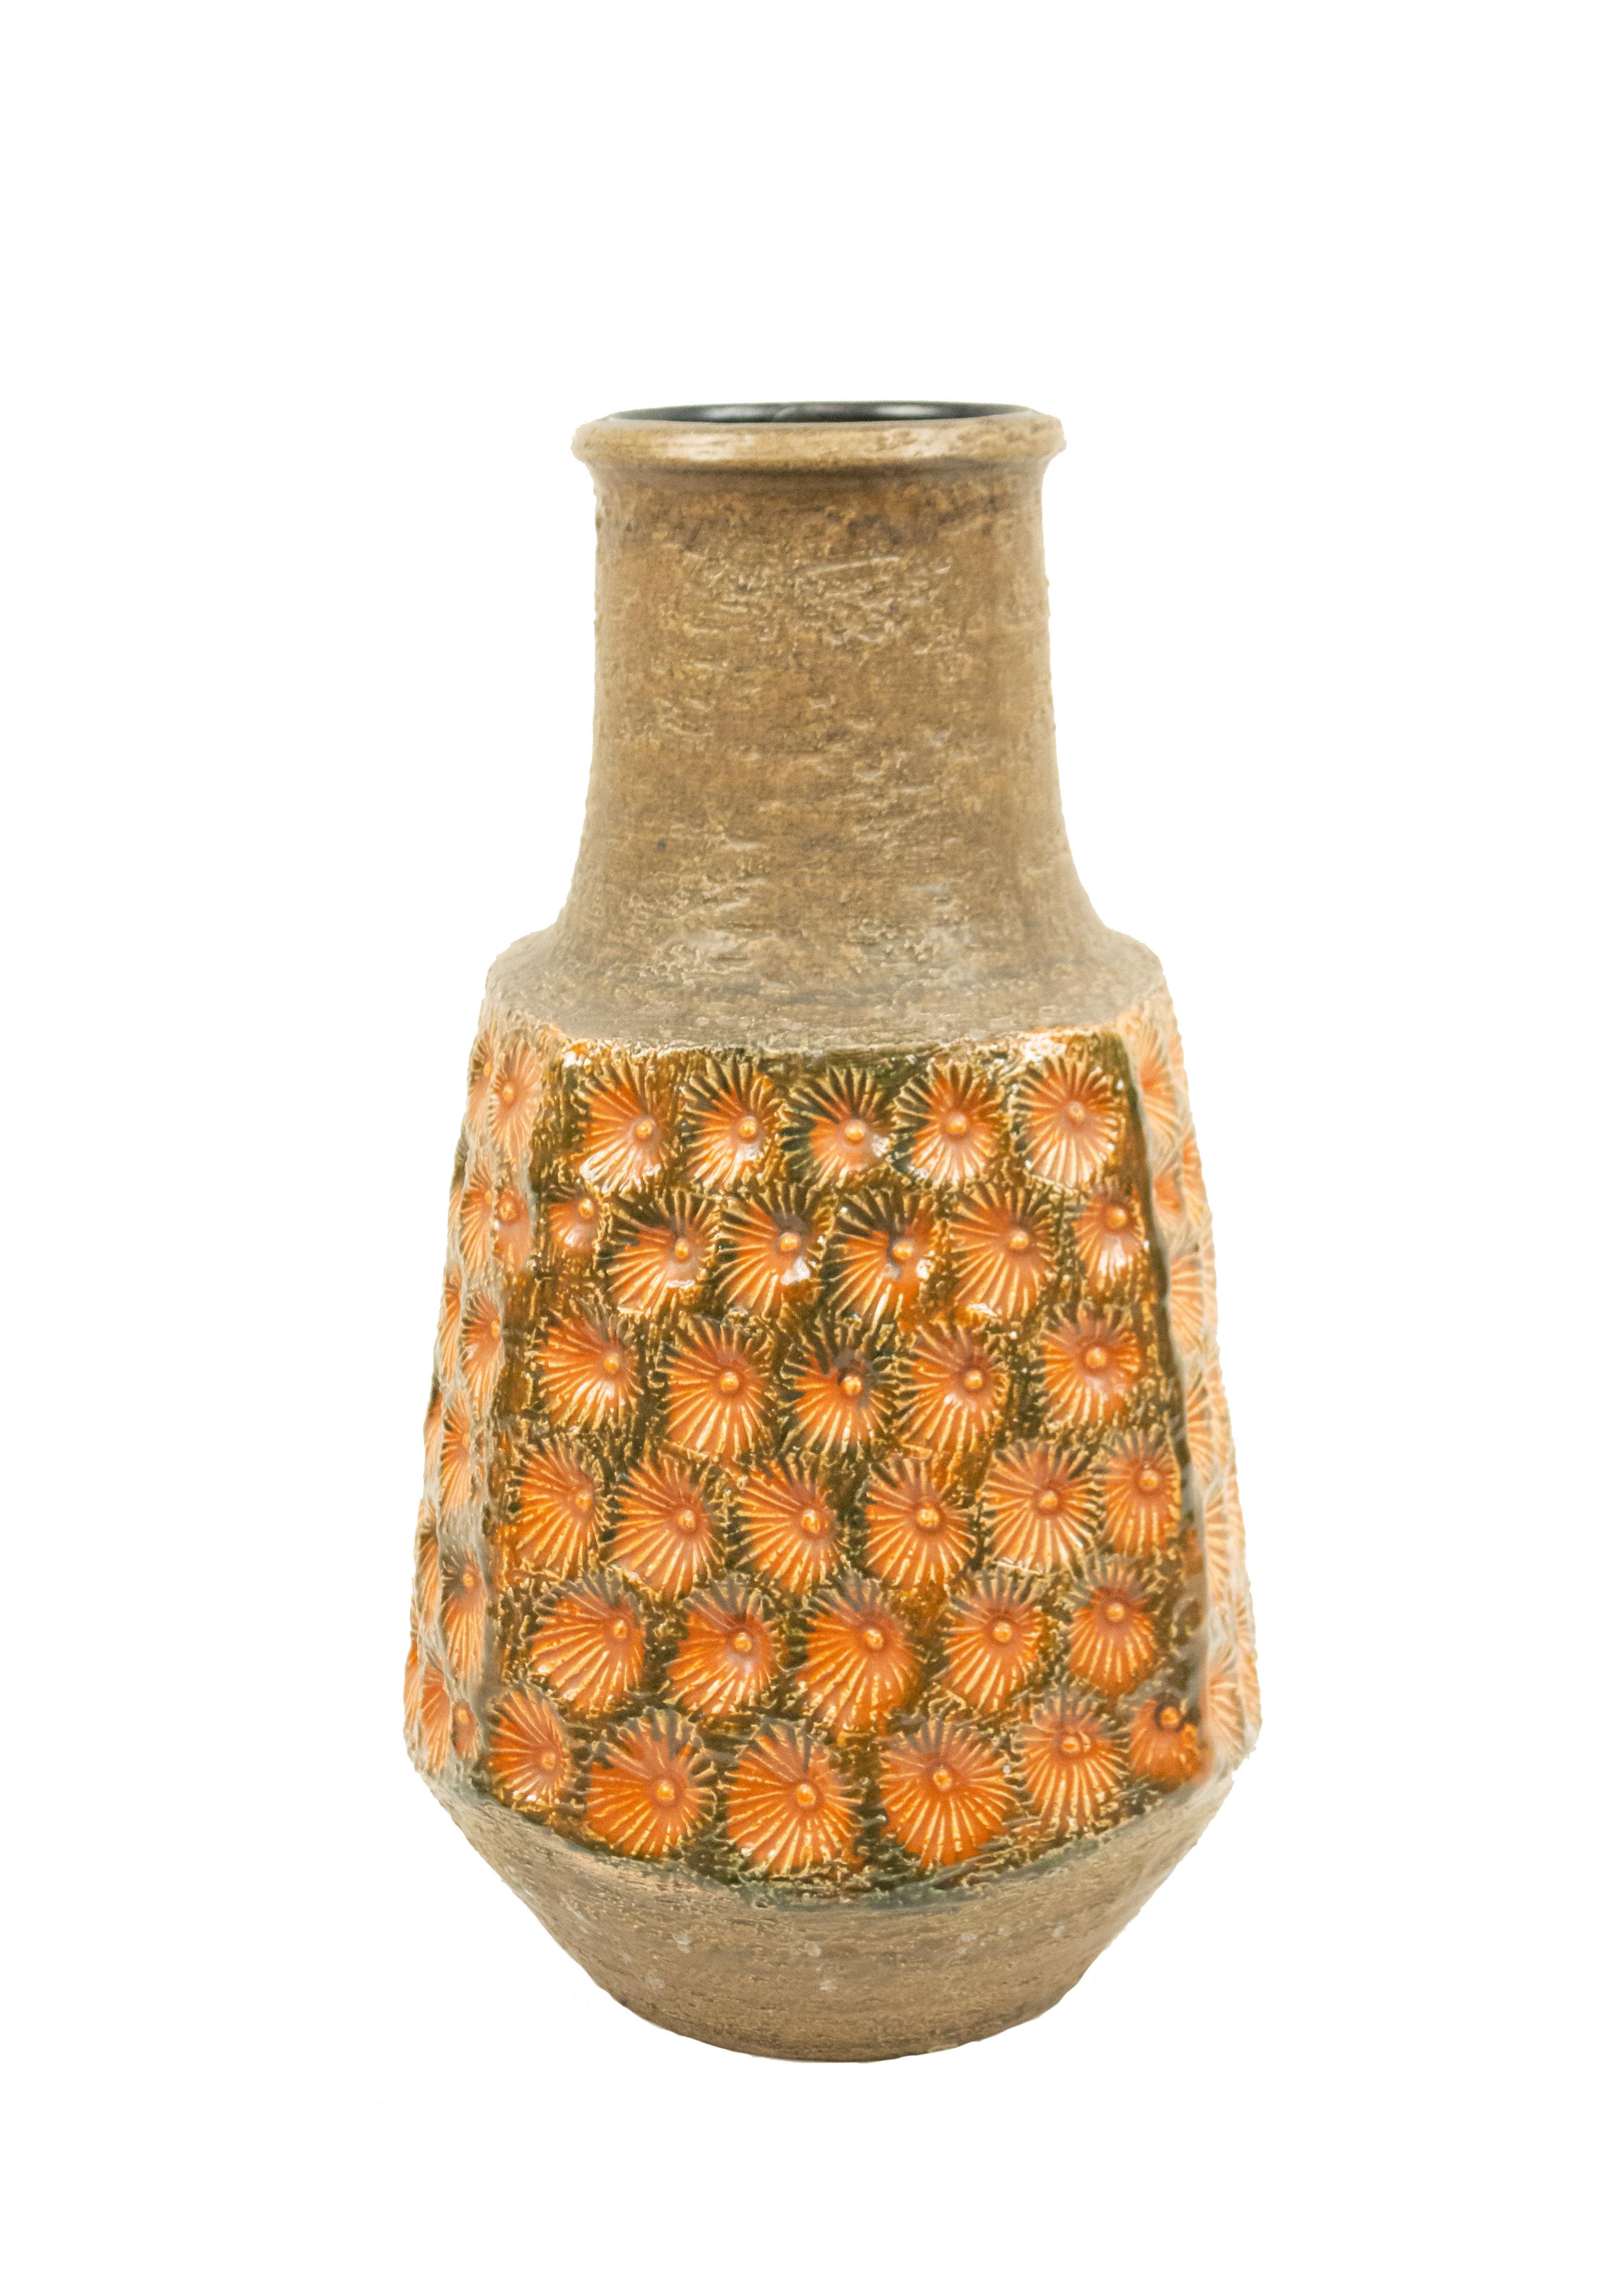 Post-War West Germany Green and Orange Ceramic Vase For Sale 2